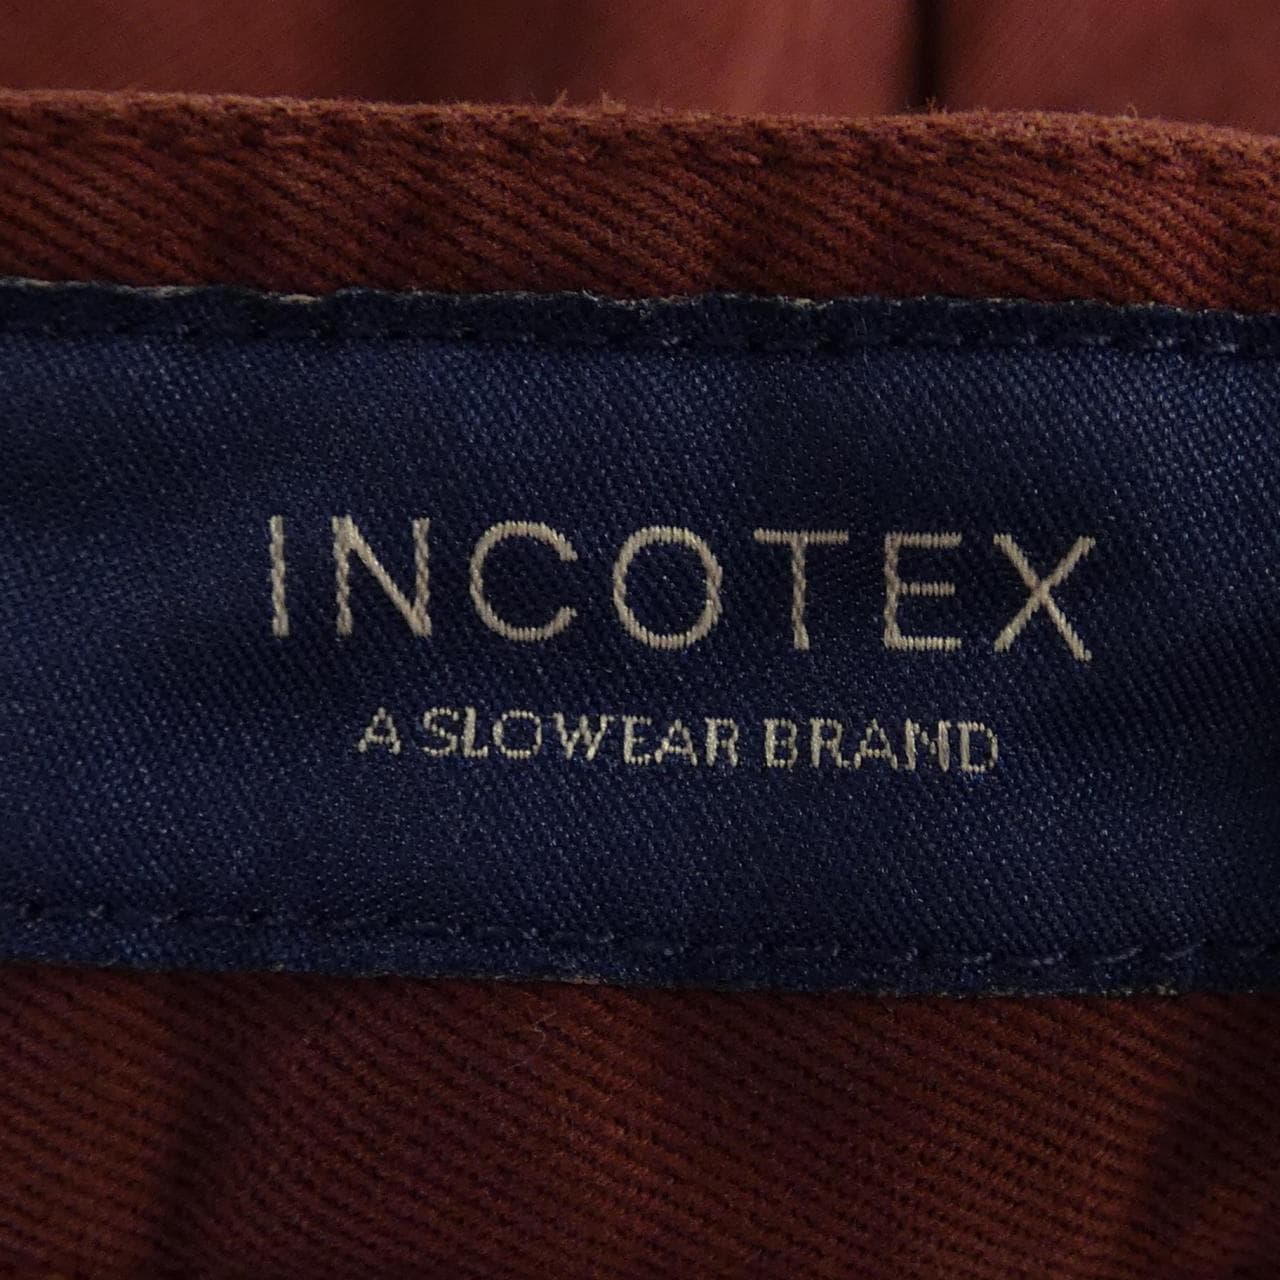 Incotex INCOTEX pants